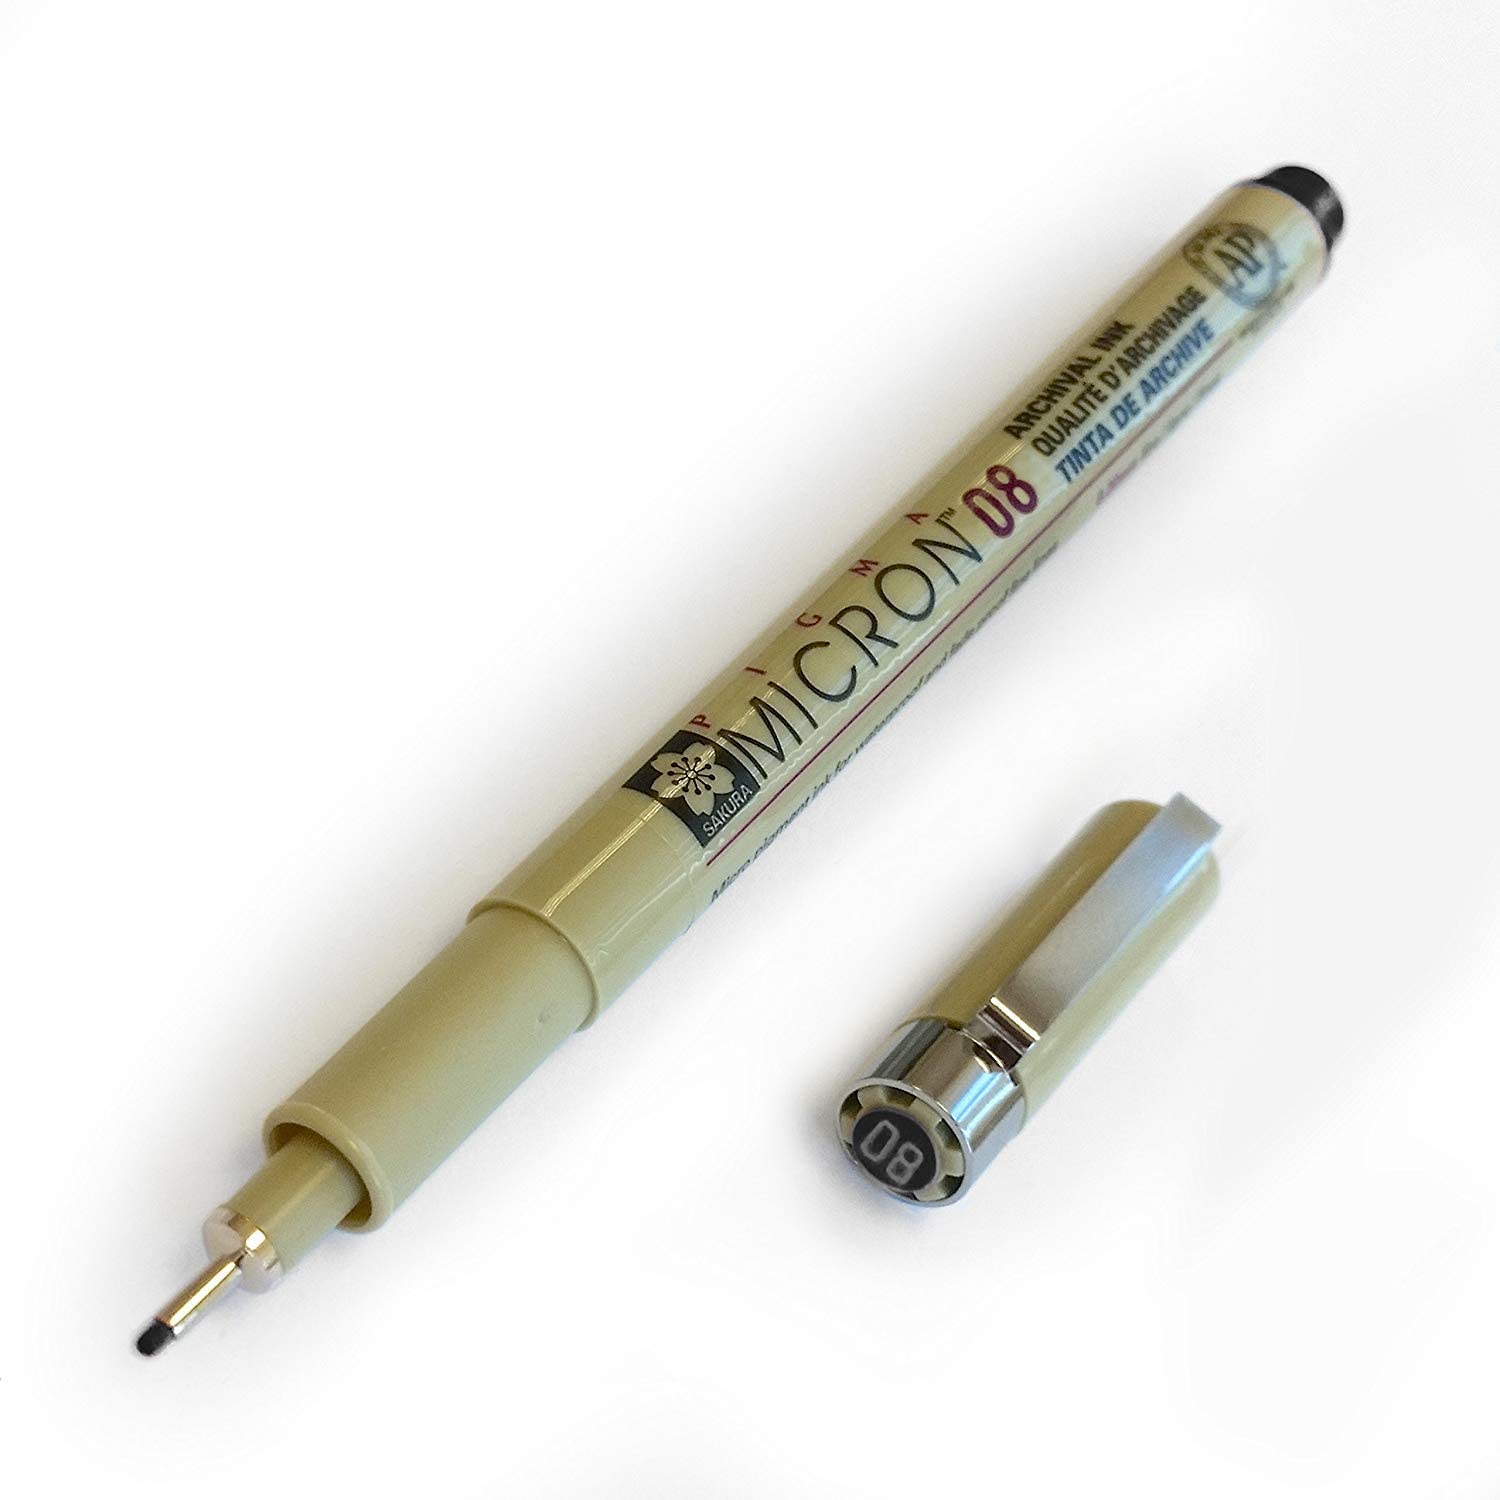 Pigma Micron 08 .5mm Fine Point Pen - Black – Cocoa Daisy